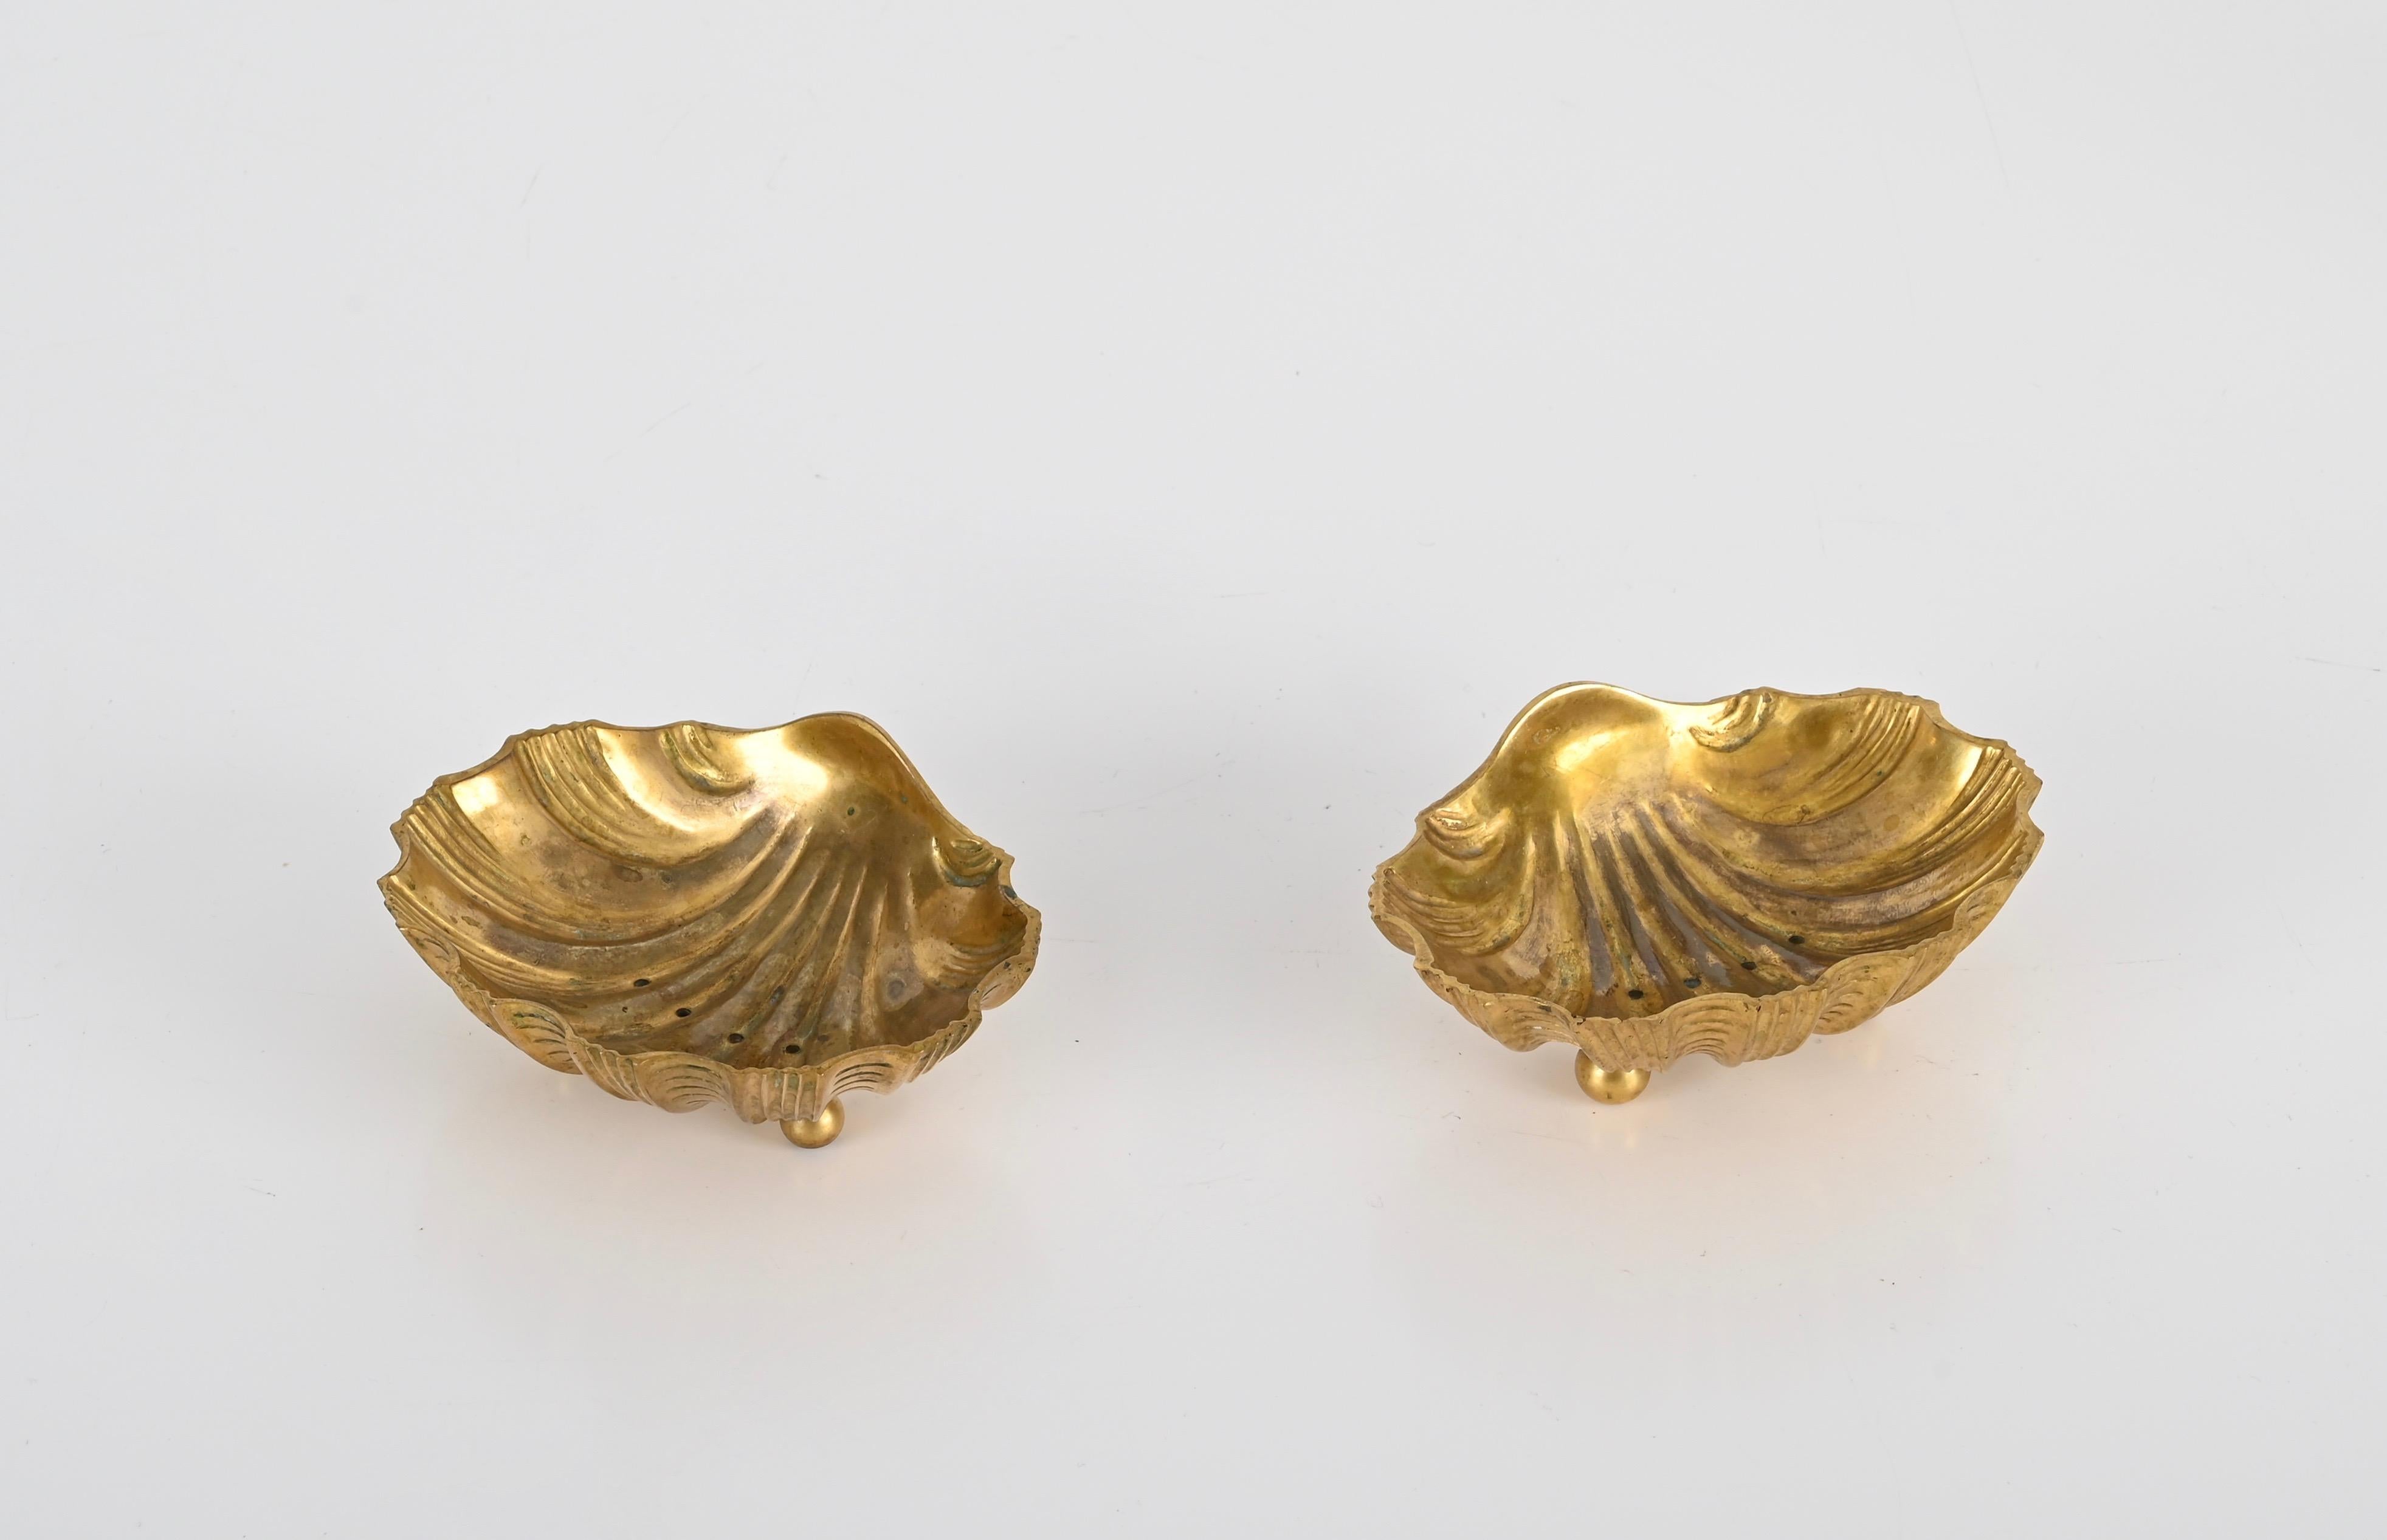 Wunderschönes Paar muschelförmiger Seifenschalen aus vergoldeter Bronze. Diese fantastische Seifenschale im Hollywood-Regency-Stil wurde in den 1950er Jahren in Italien hergestellt.

Die perfekten Details und die Qualität der Vergoldung dieser